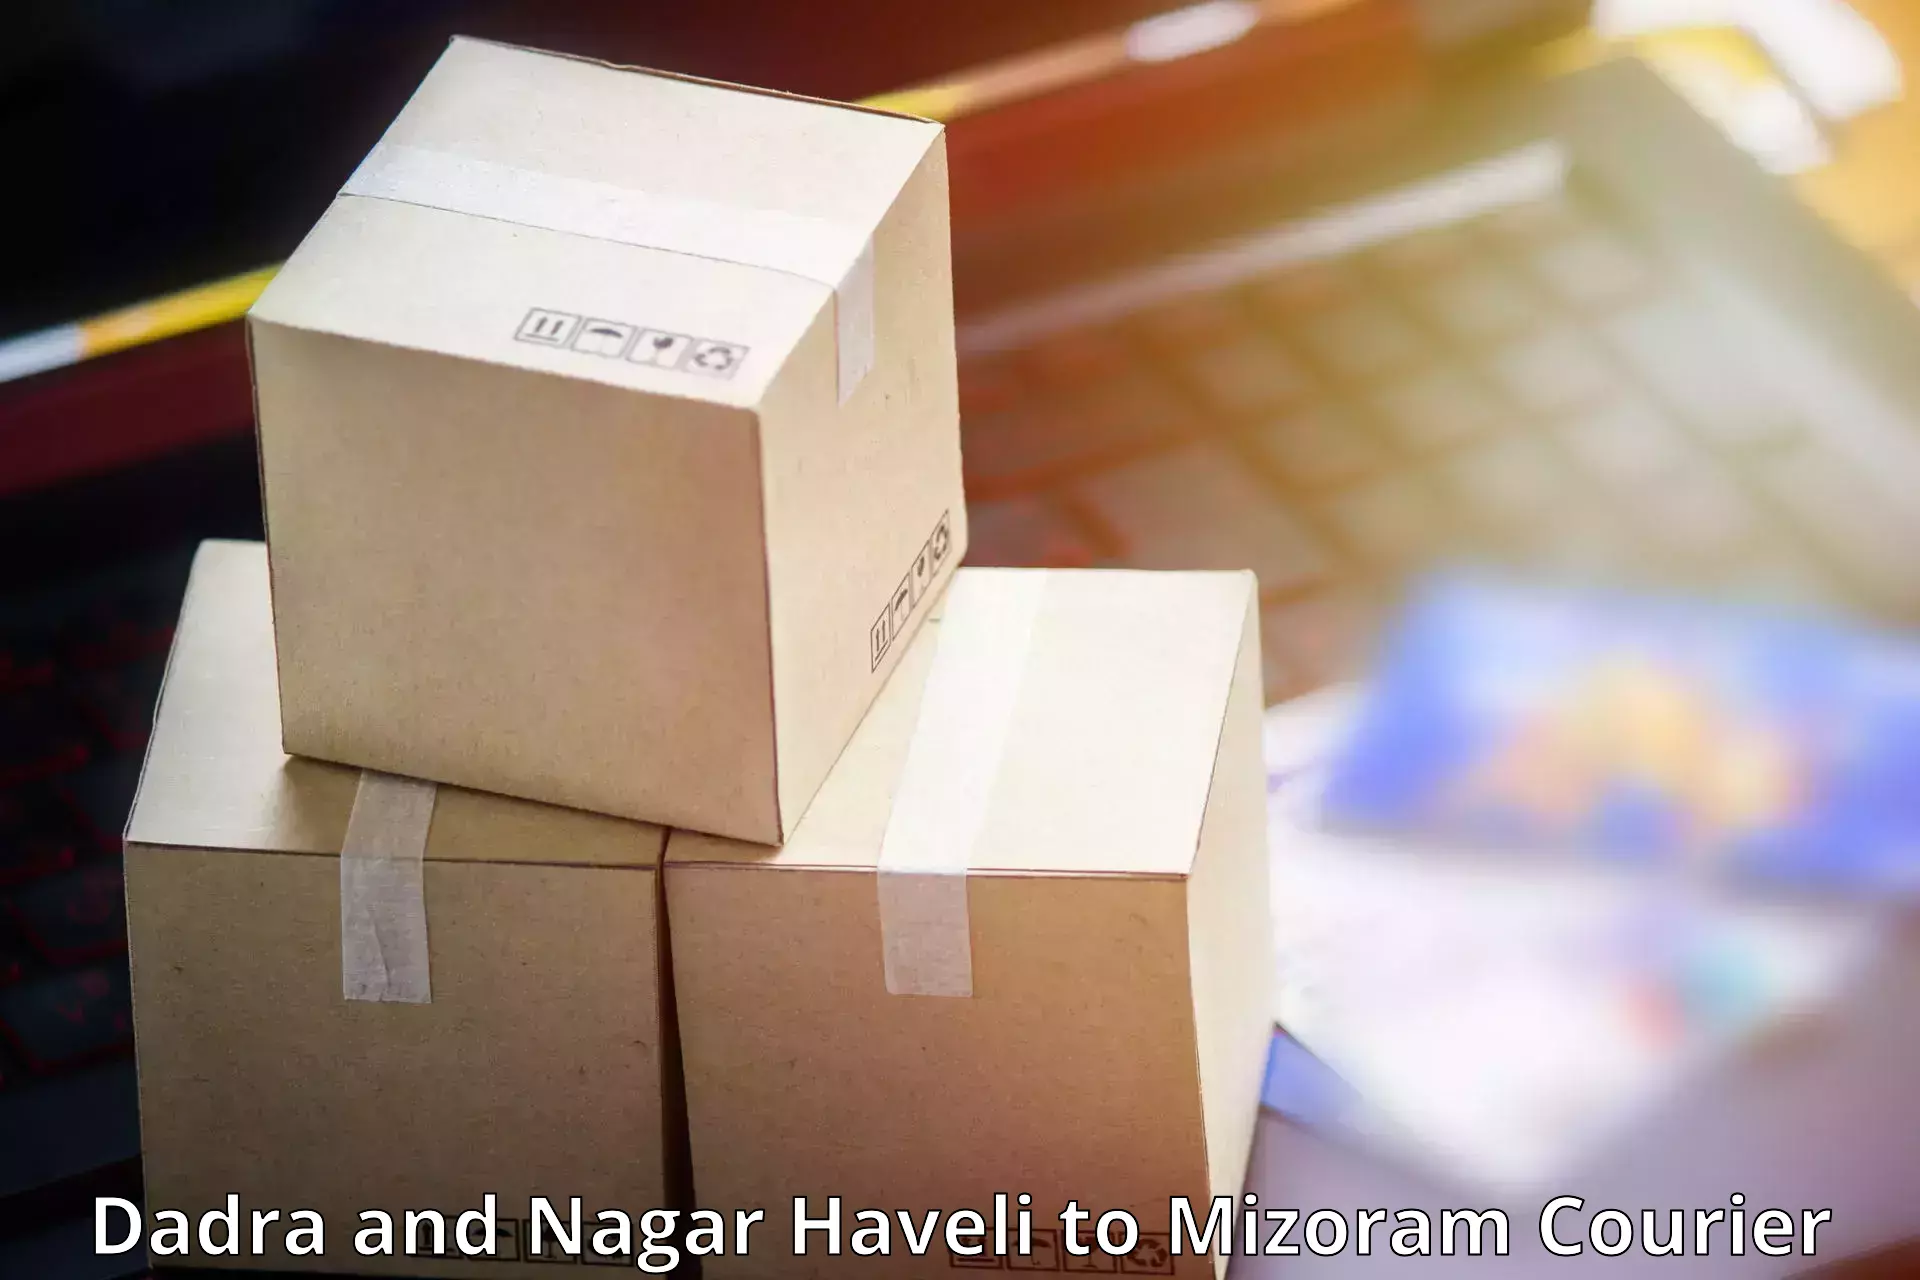 Reliable logistics providers Dadra and Nagar Haveli to Saitual